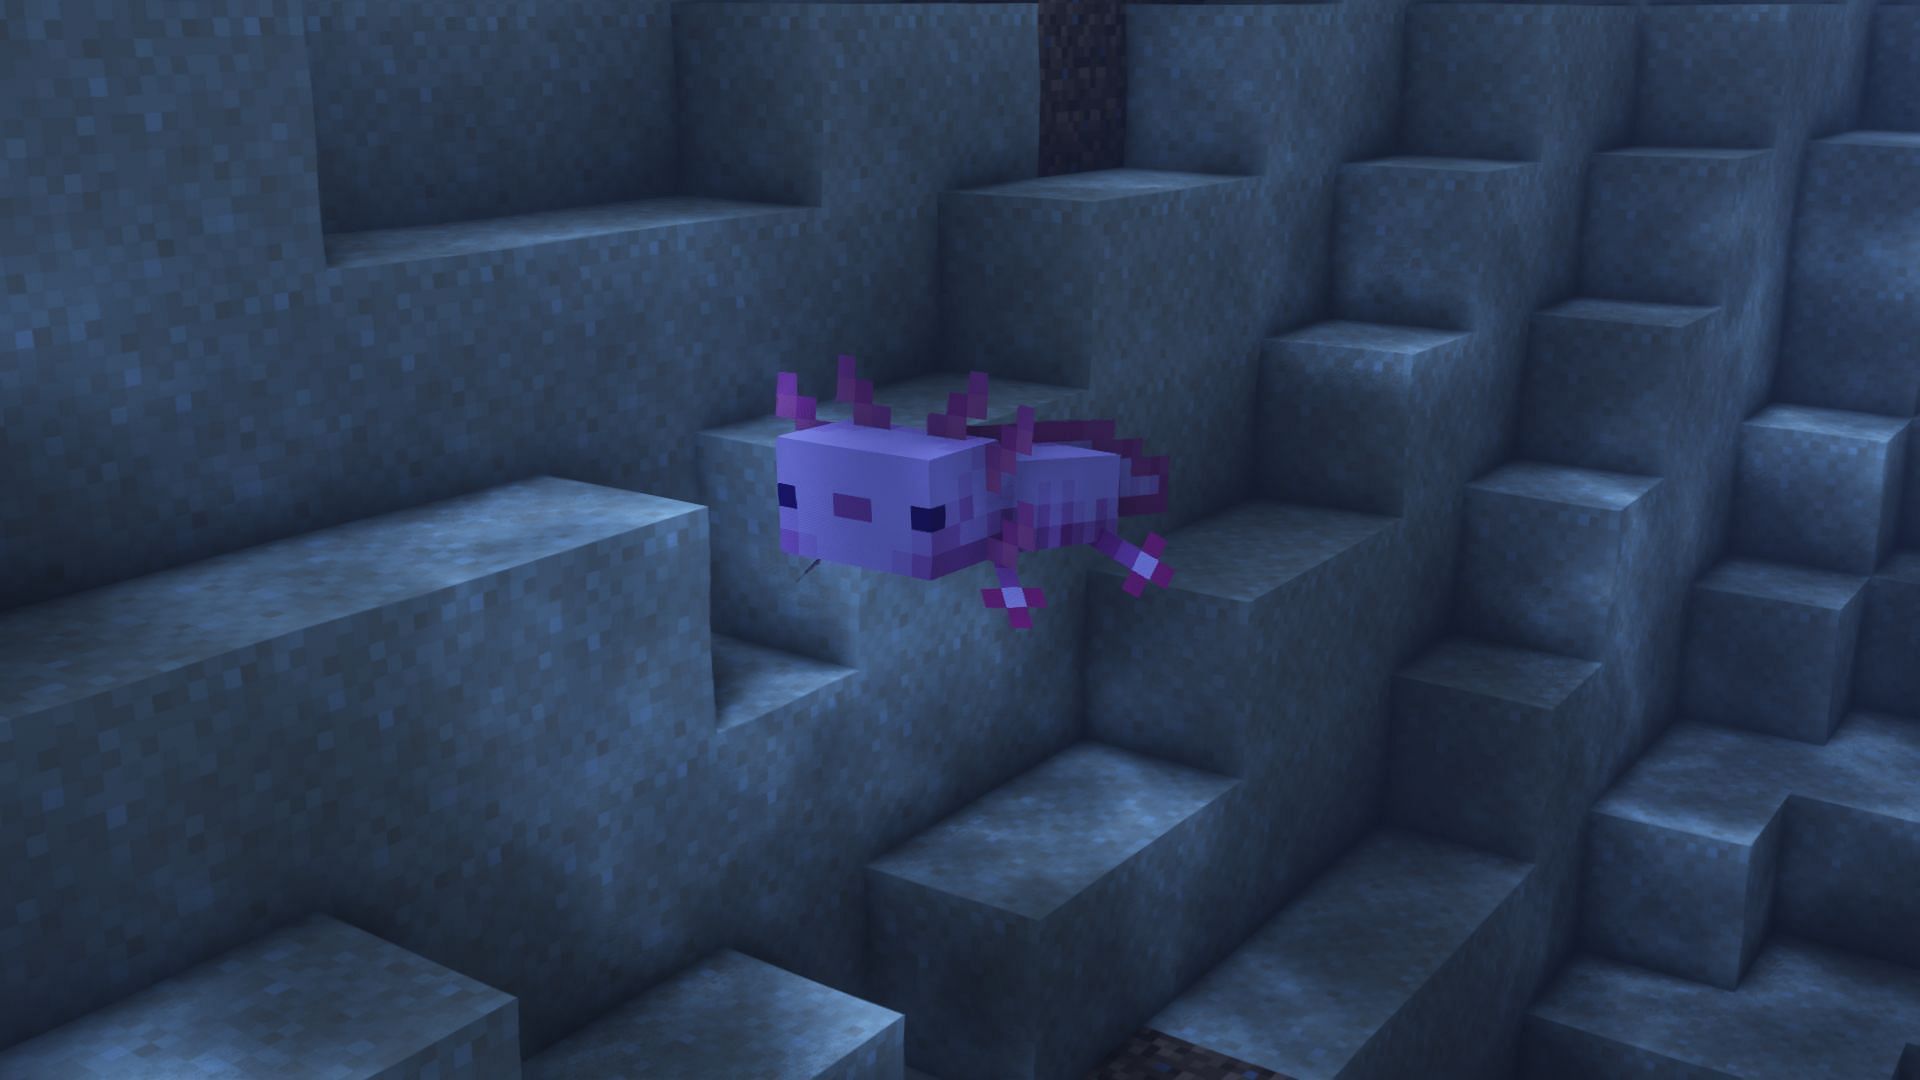 Un axolotl en el juego (Imagen a través de Minecraft)